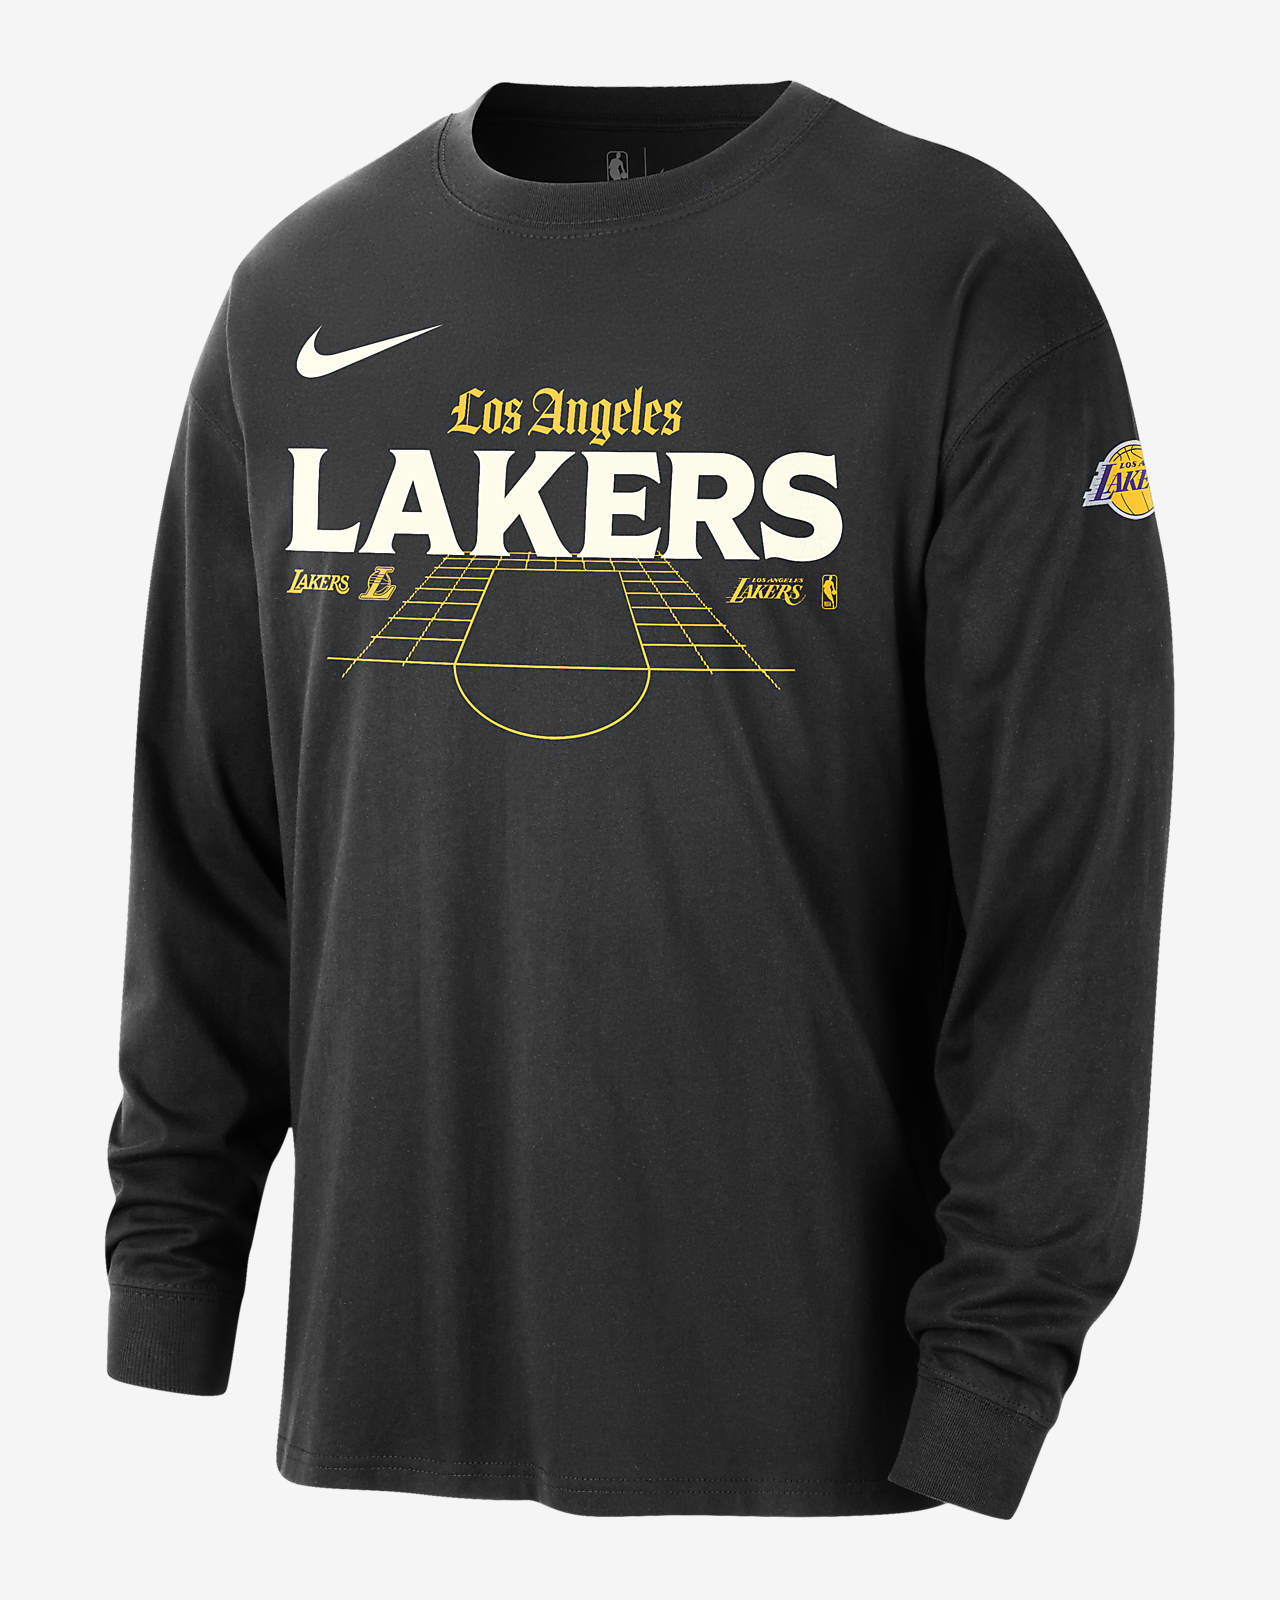 洛杉矶湖人队 Courtside Nike NBA 男子长袖T恤